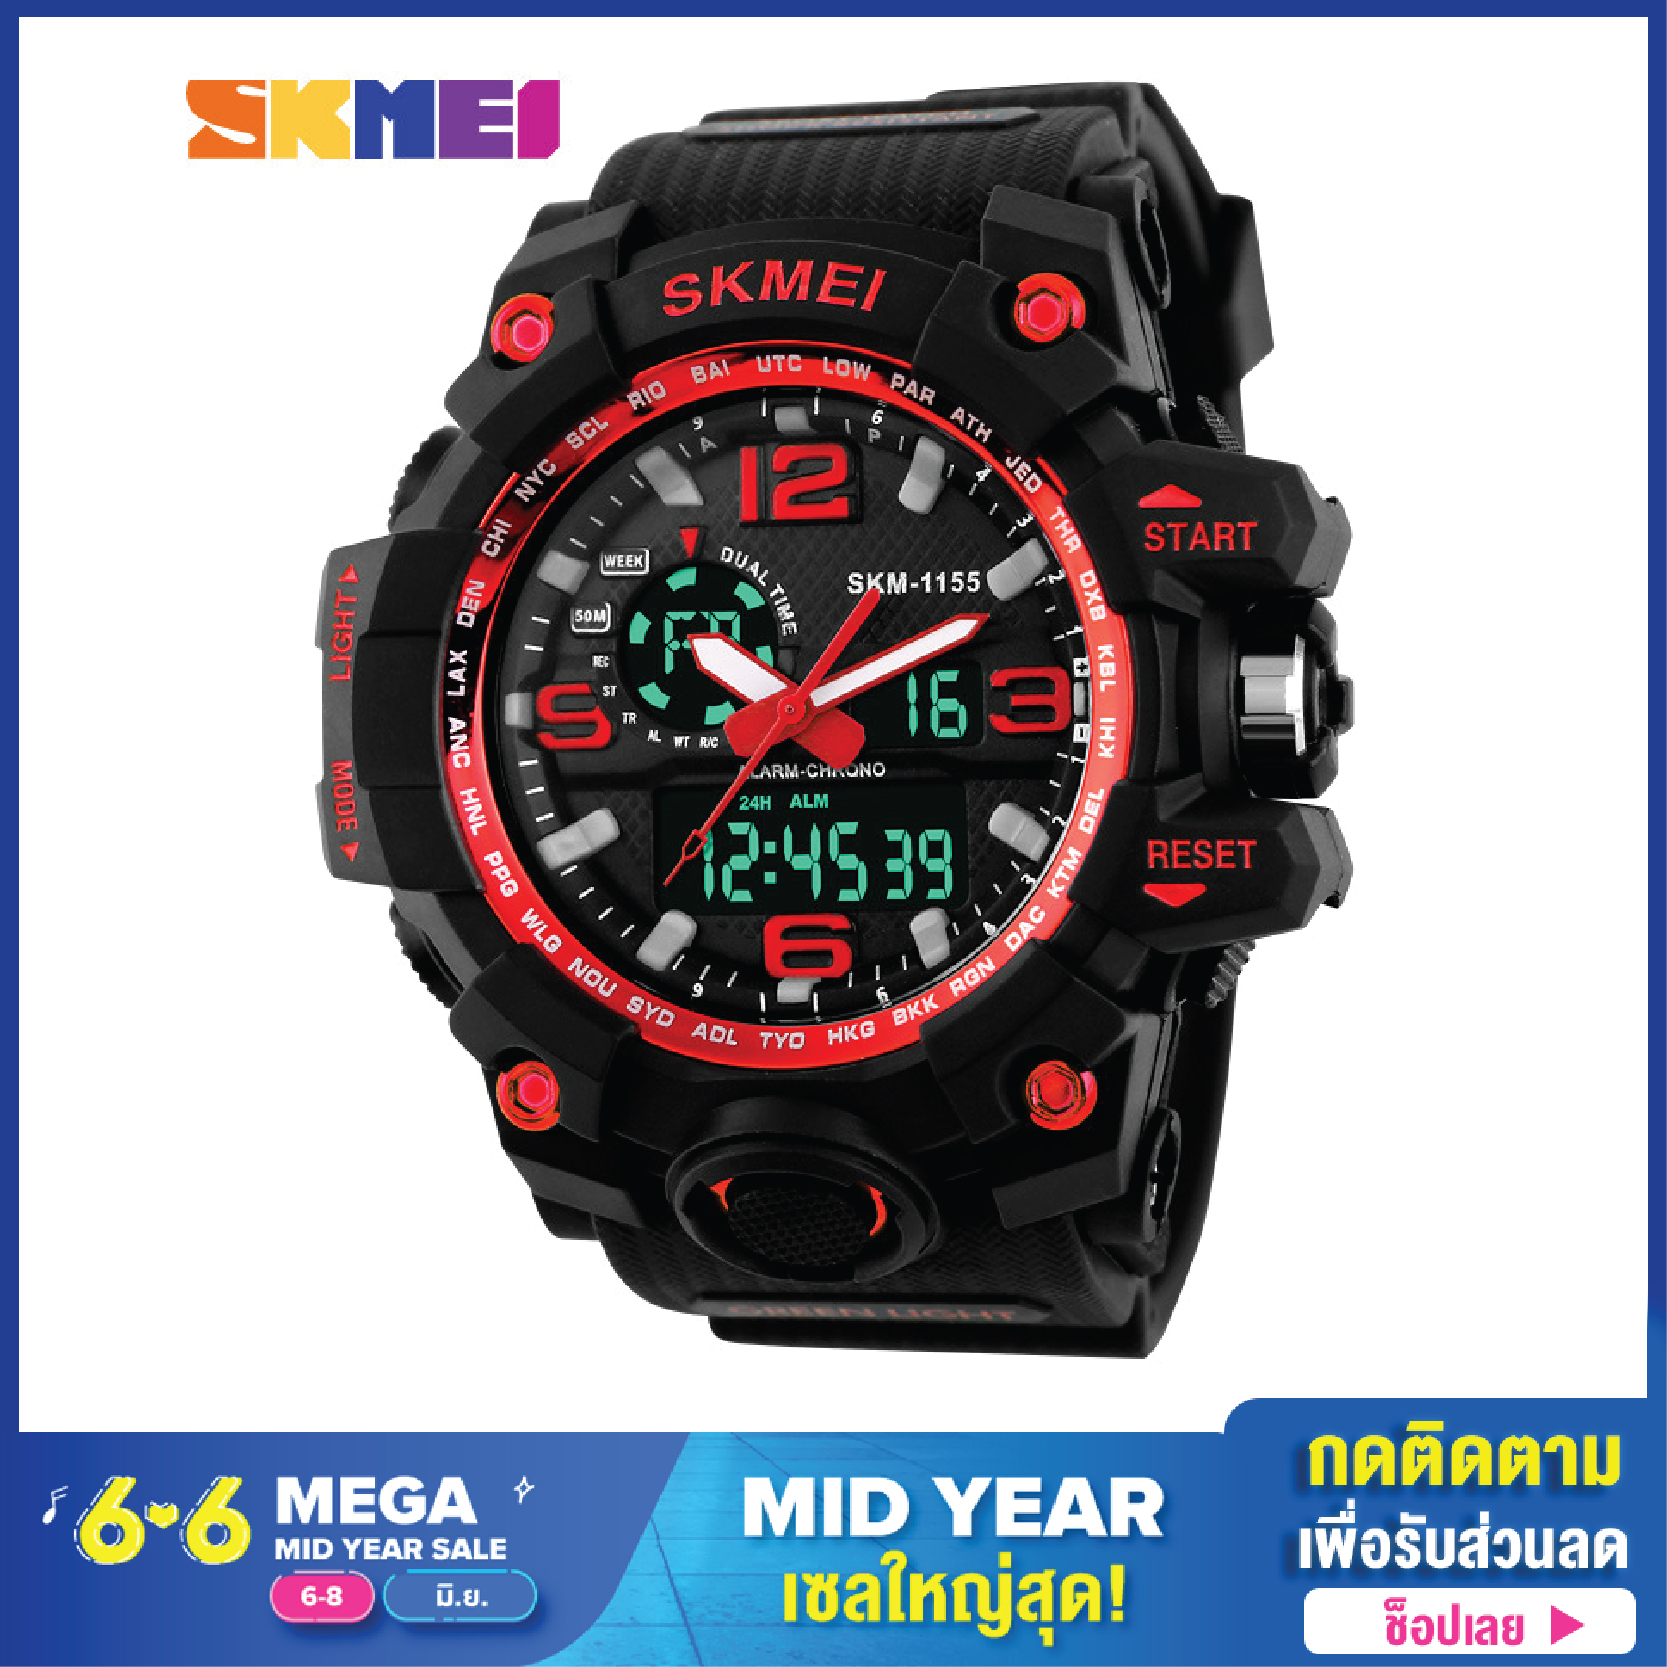 SKMEI Sport 1155 นาฬิกาสปอตสุดทนทาน แข็งแกร่ง กันน้ำได้ ระบบอะนาล็อกและ นาฬิกาดิจิตอล กันน้ำได้5เมตร นาฬิกาข้อมือผู้ชาย ส่งฟรี1-2วัน ได้ของ